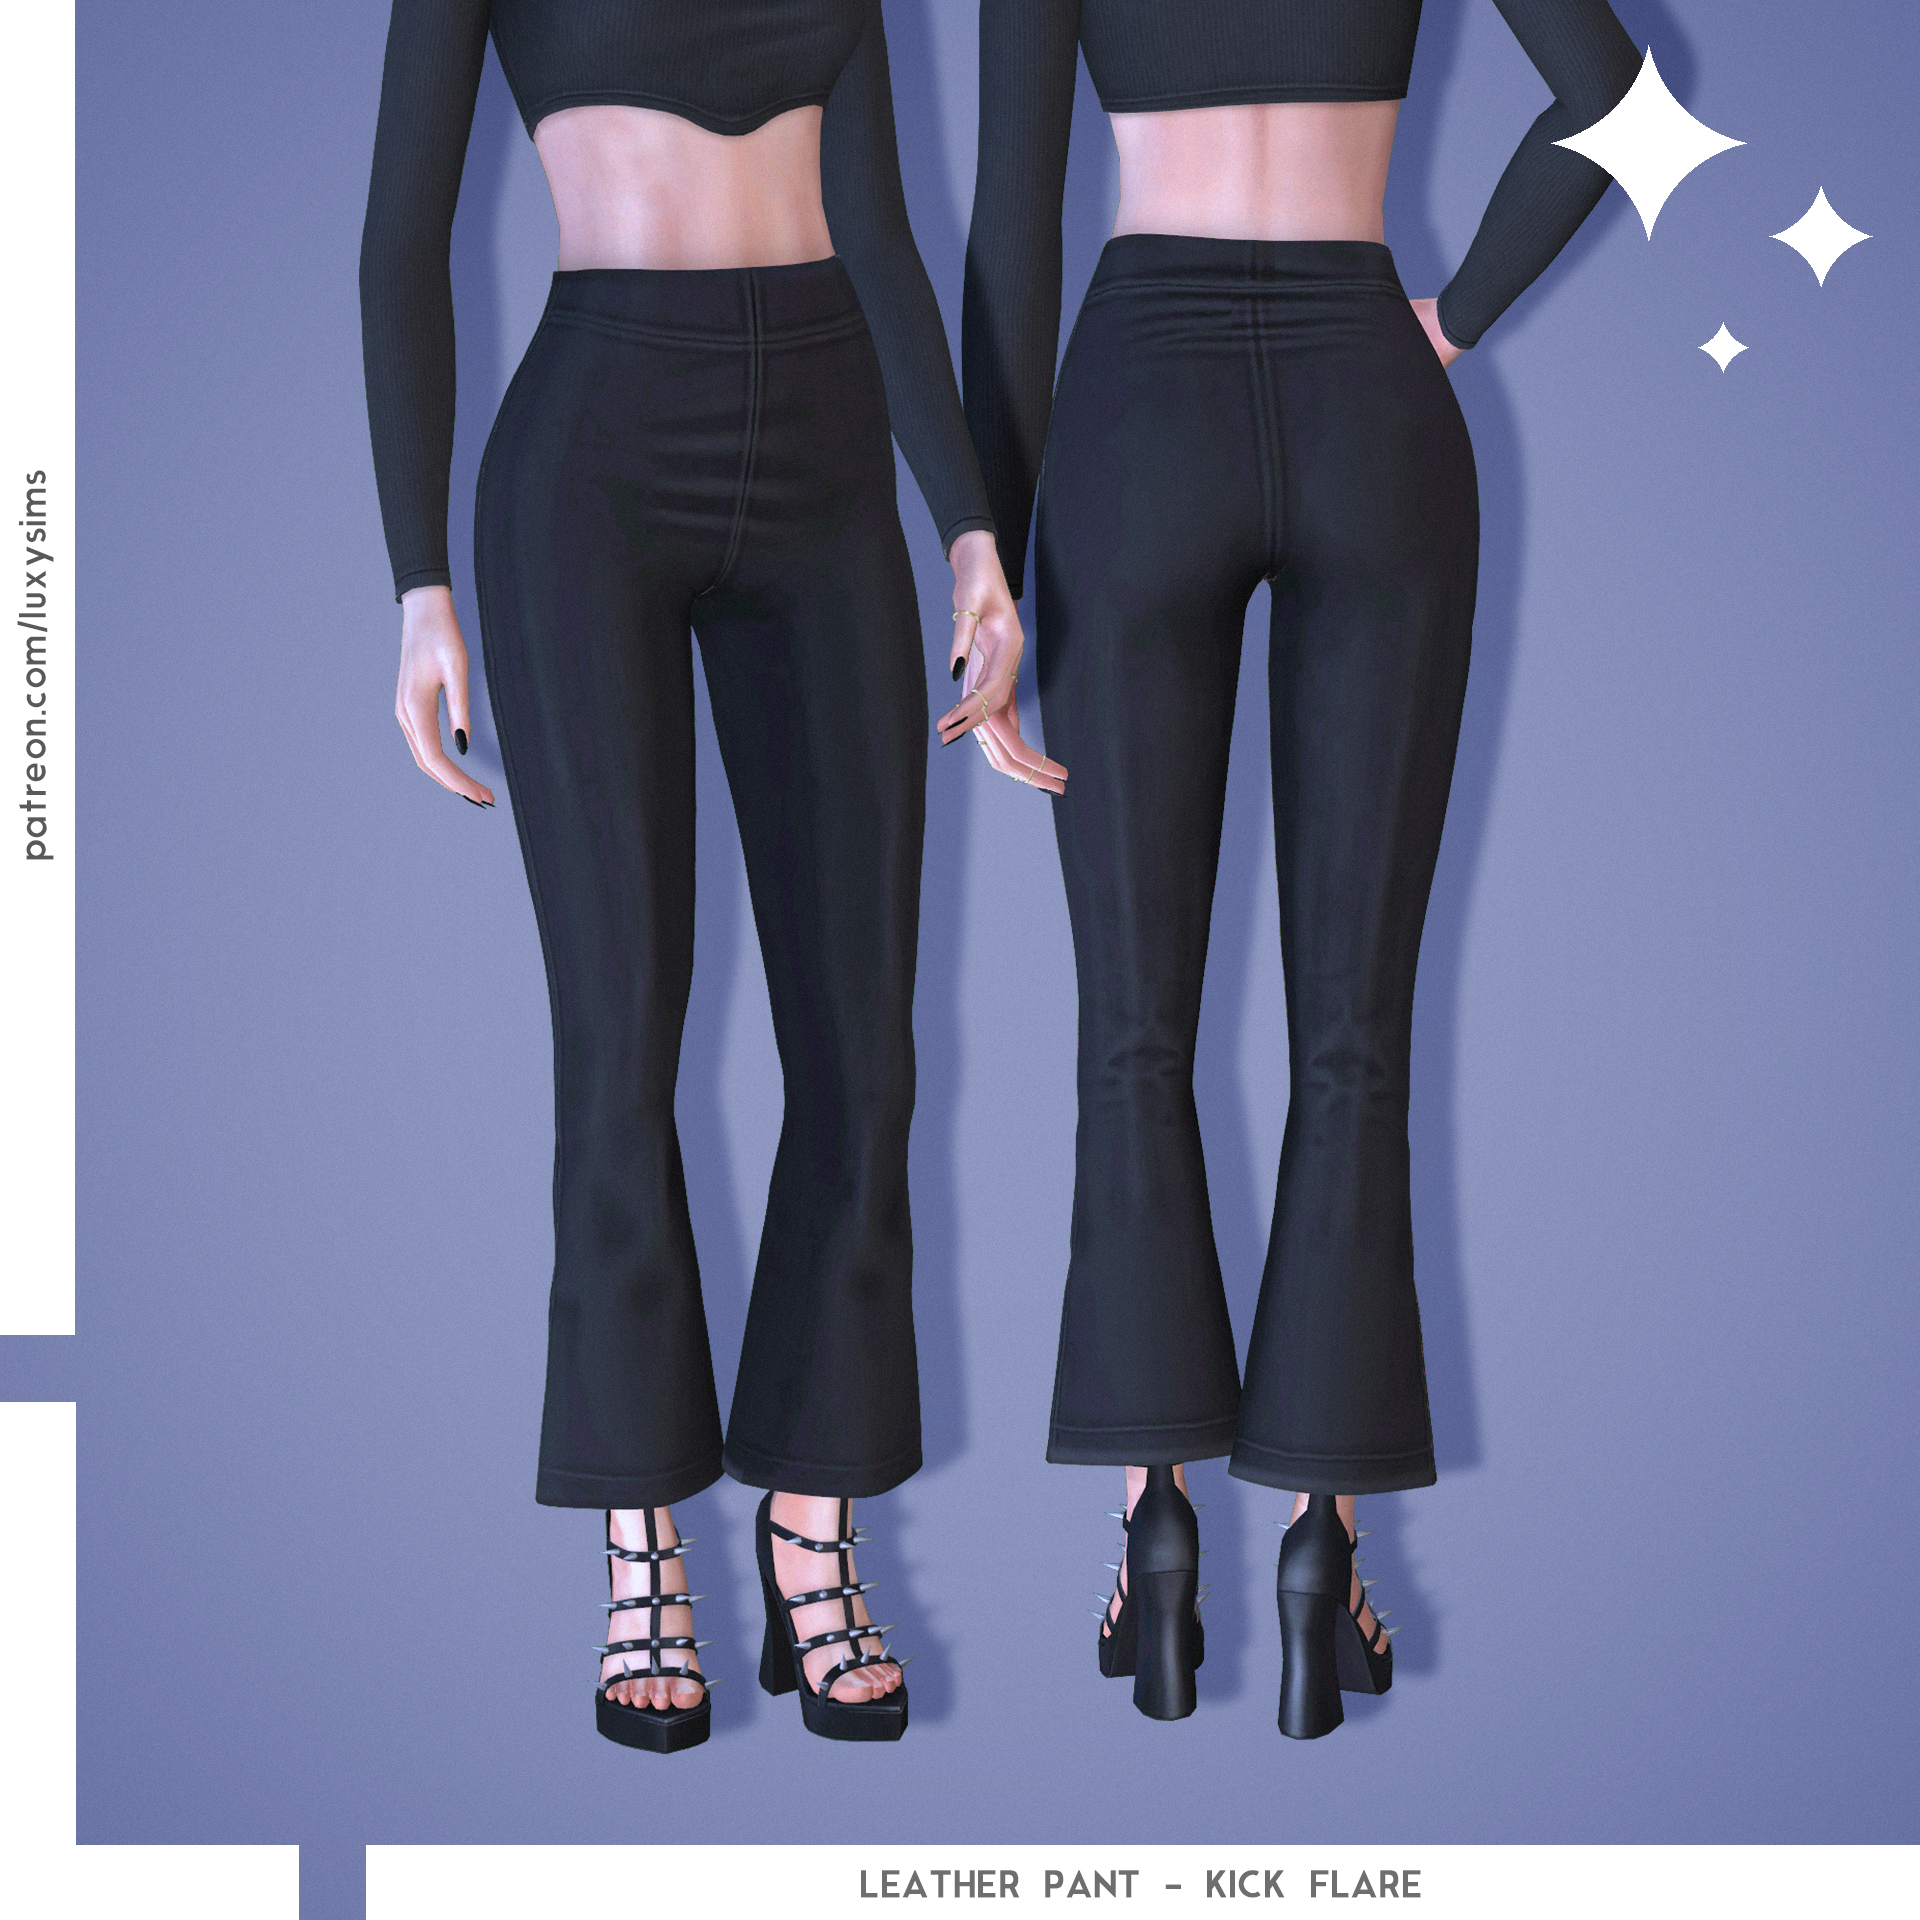 Leather Pant - Kick Flare - The Sims 4 Create a Sim - CurseForge